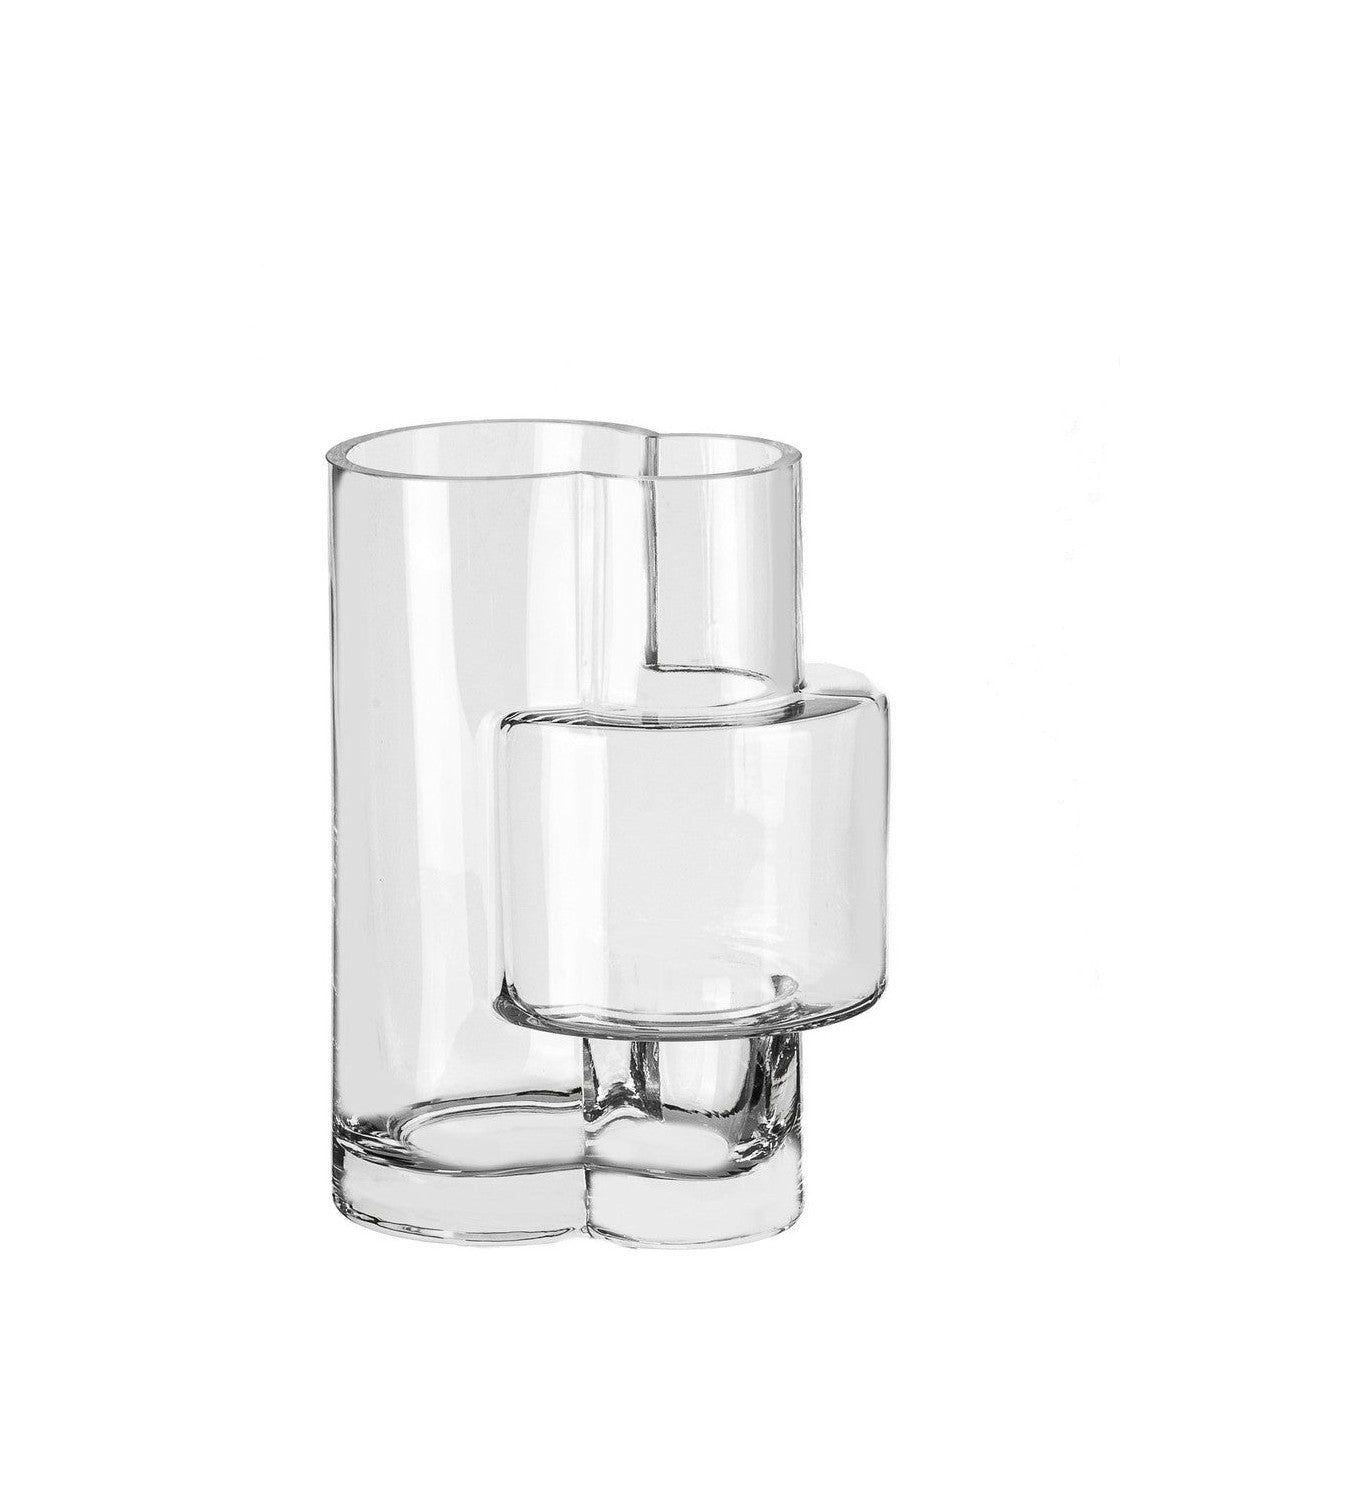 Vase moderne de style constructiviste, conception supérieure, verre transparent Fusio 25